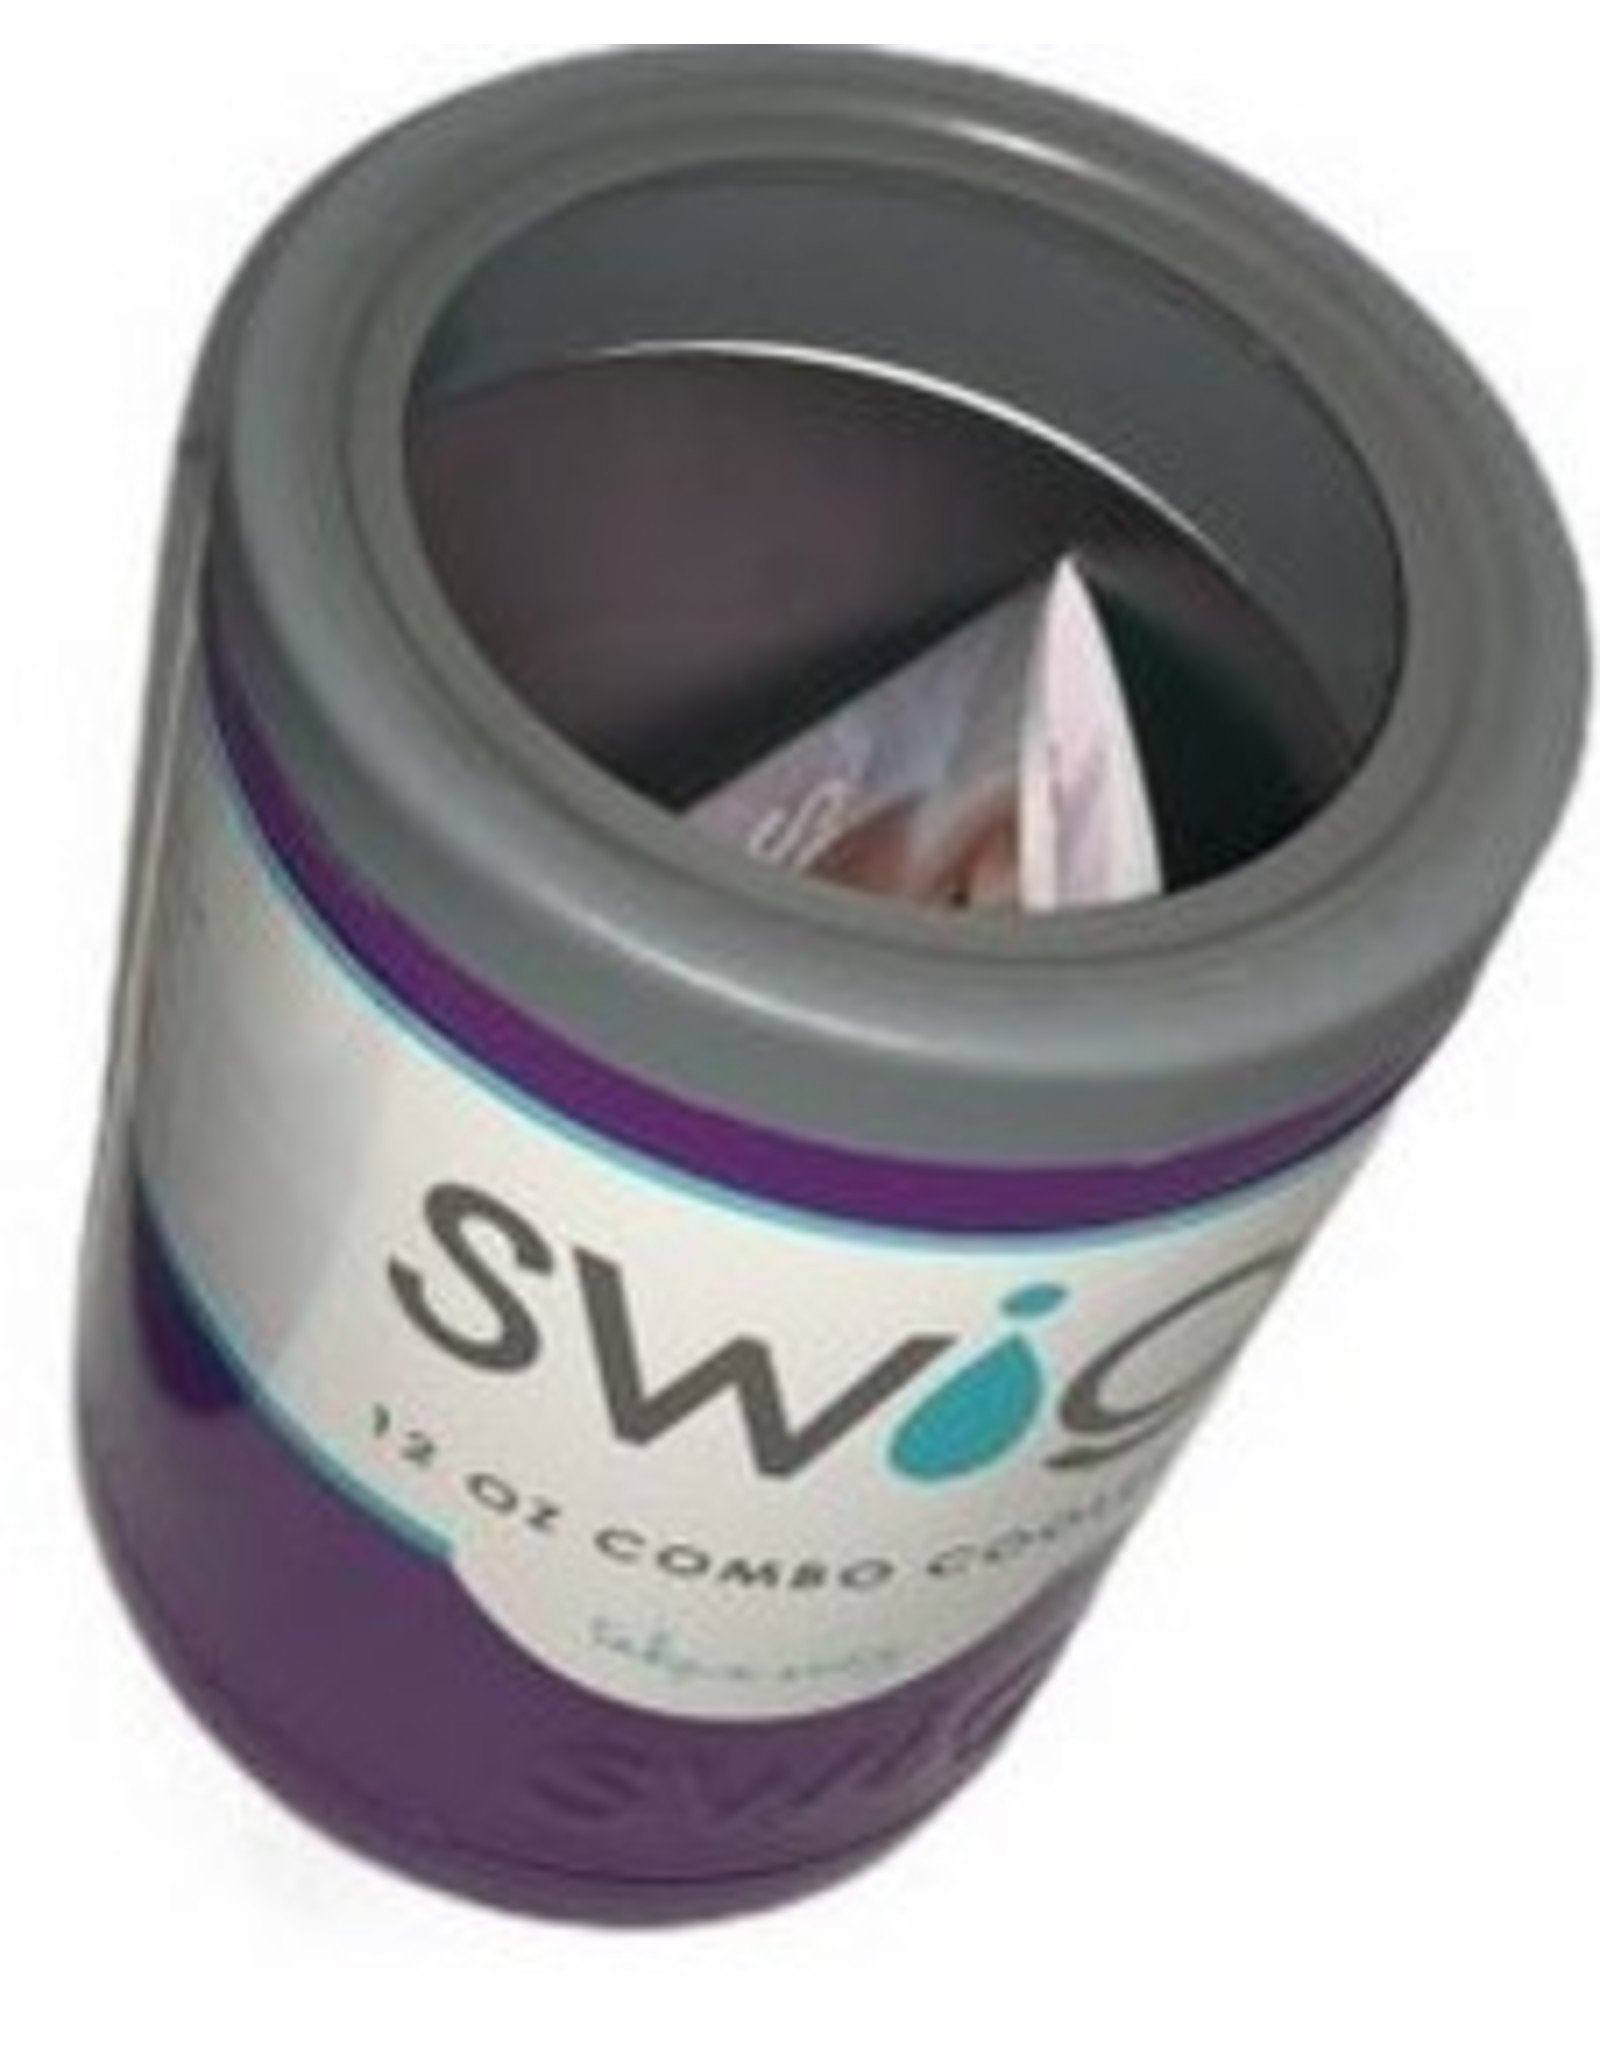 Swig Life Swig 12 oz Combo Cooler - Purple